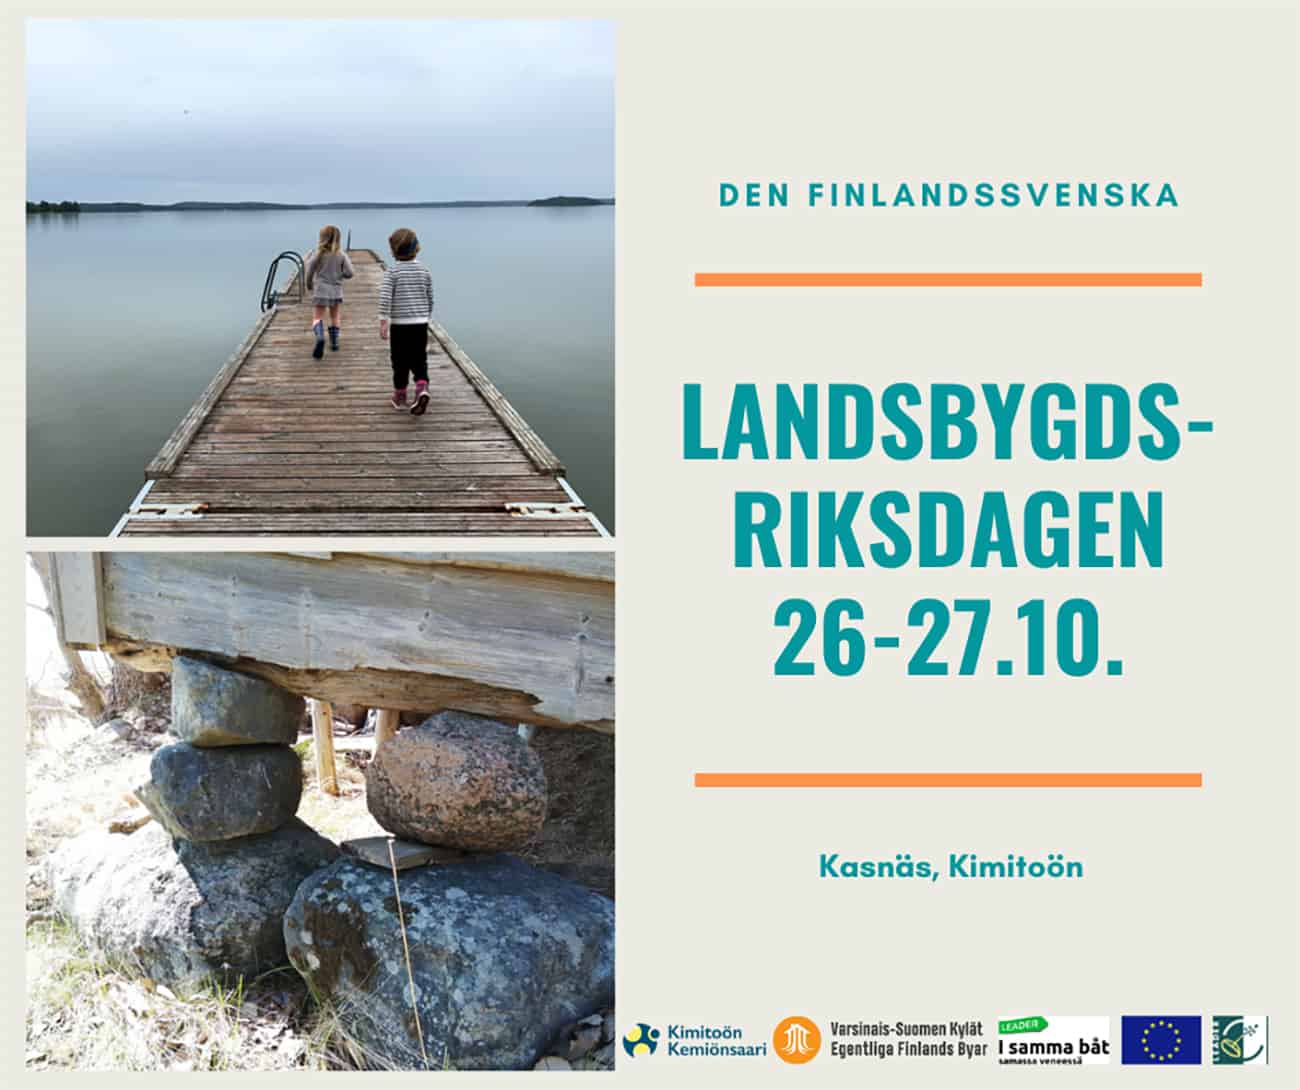 Anmälan till den finlandssvenska Landsbygdsriksdagen har nu öppnats!